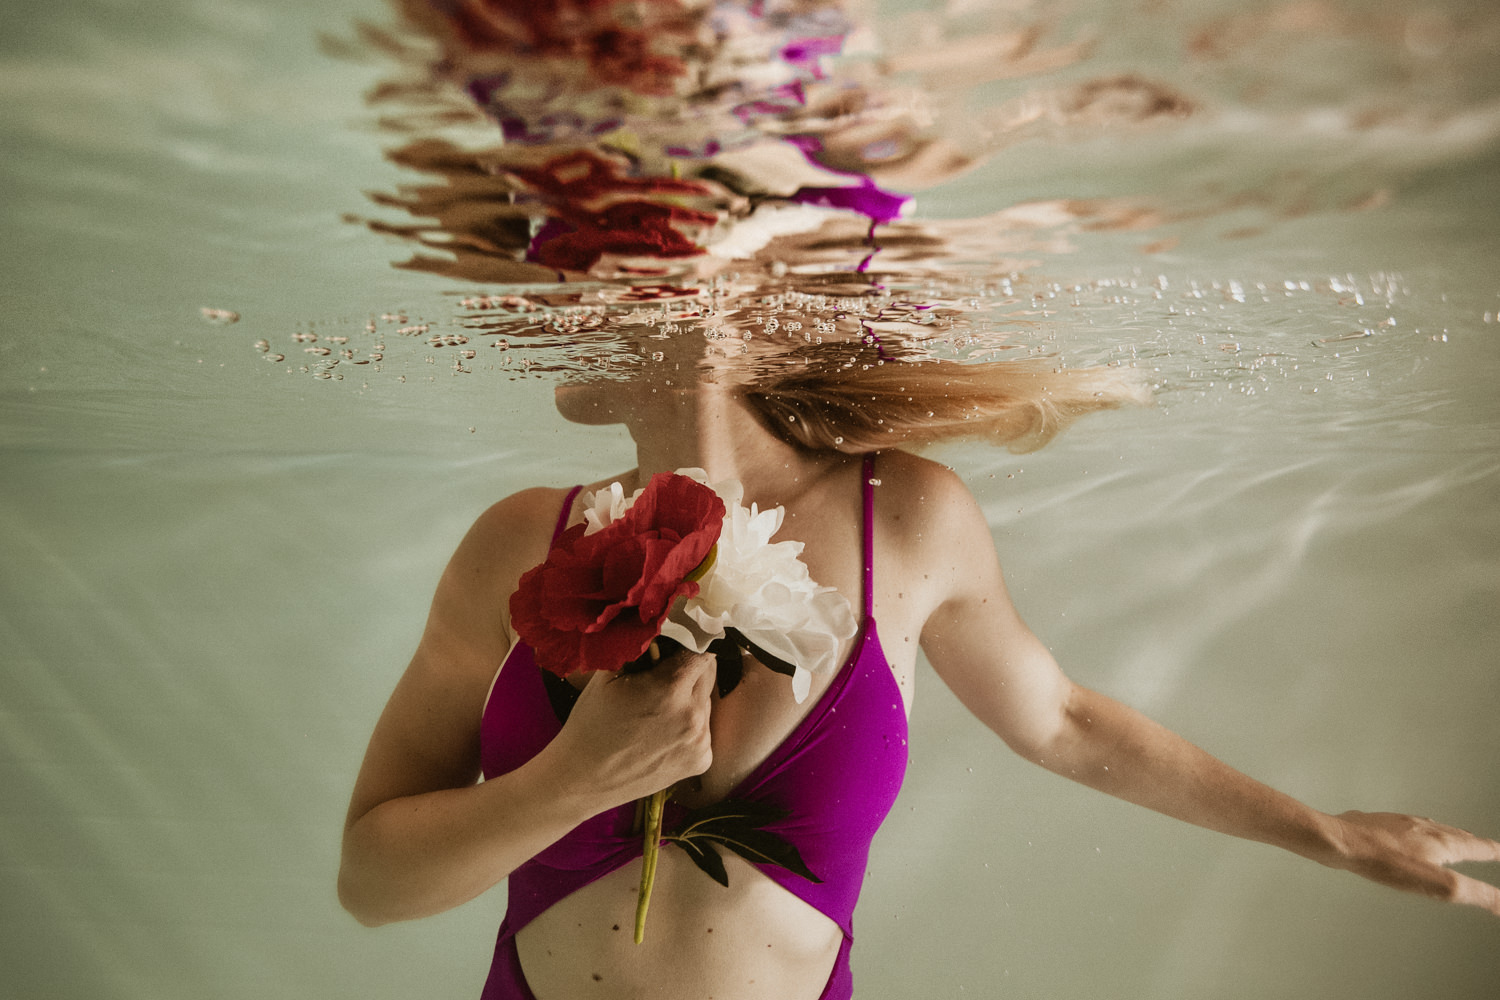 séance photo femme dans l'eau piscine intérieure